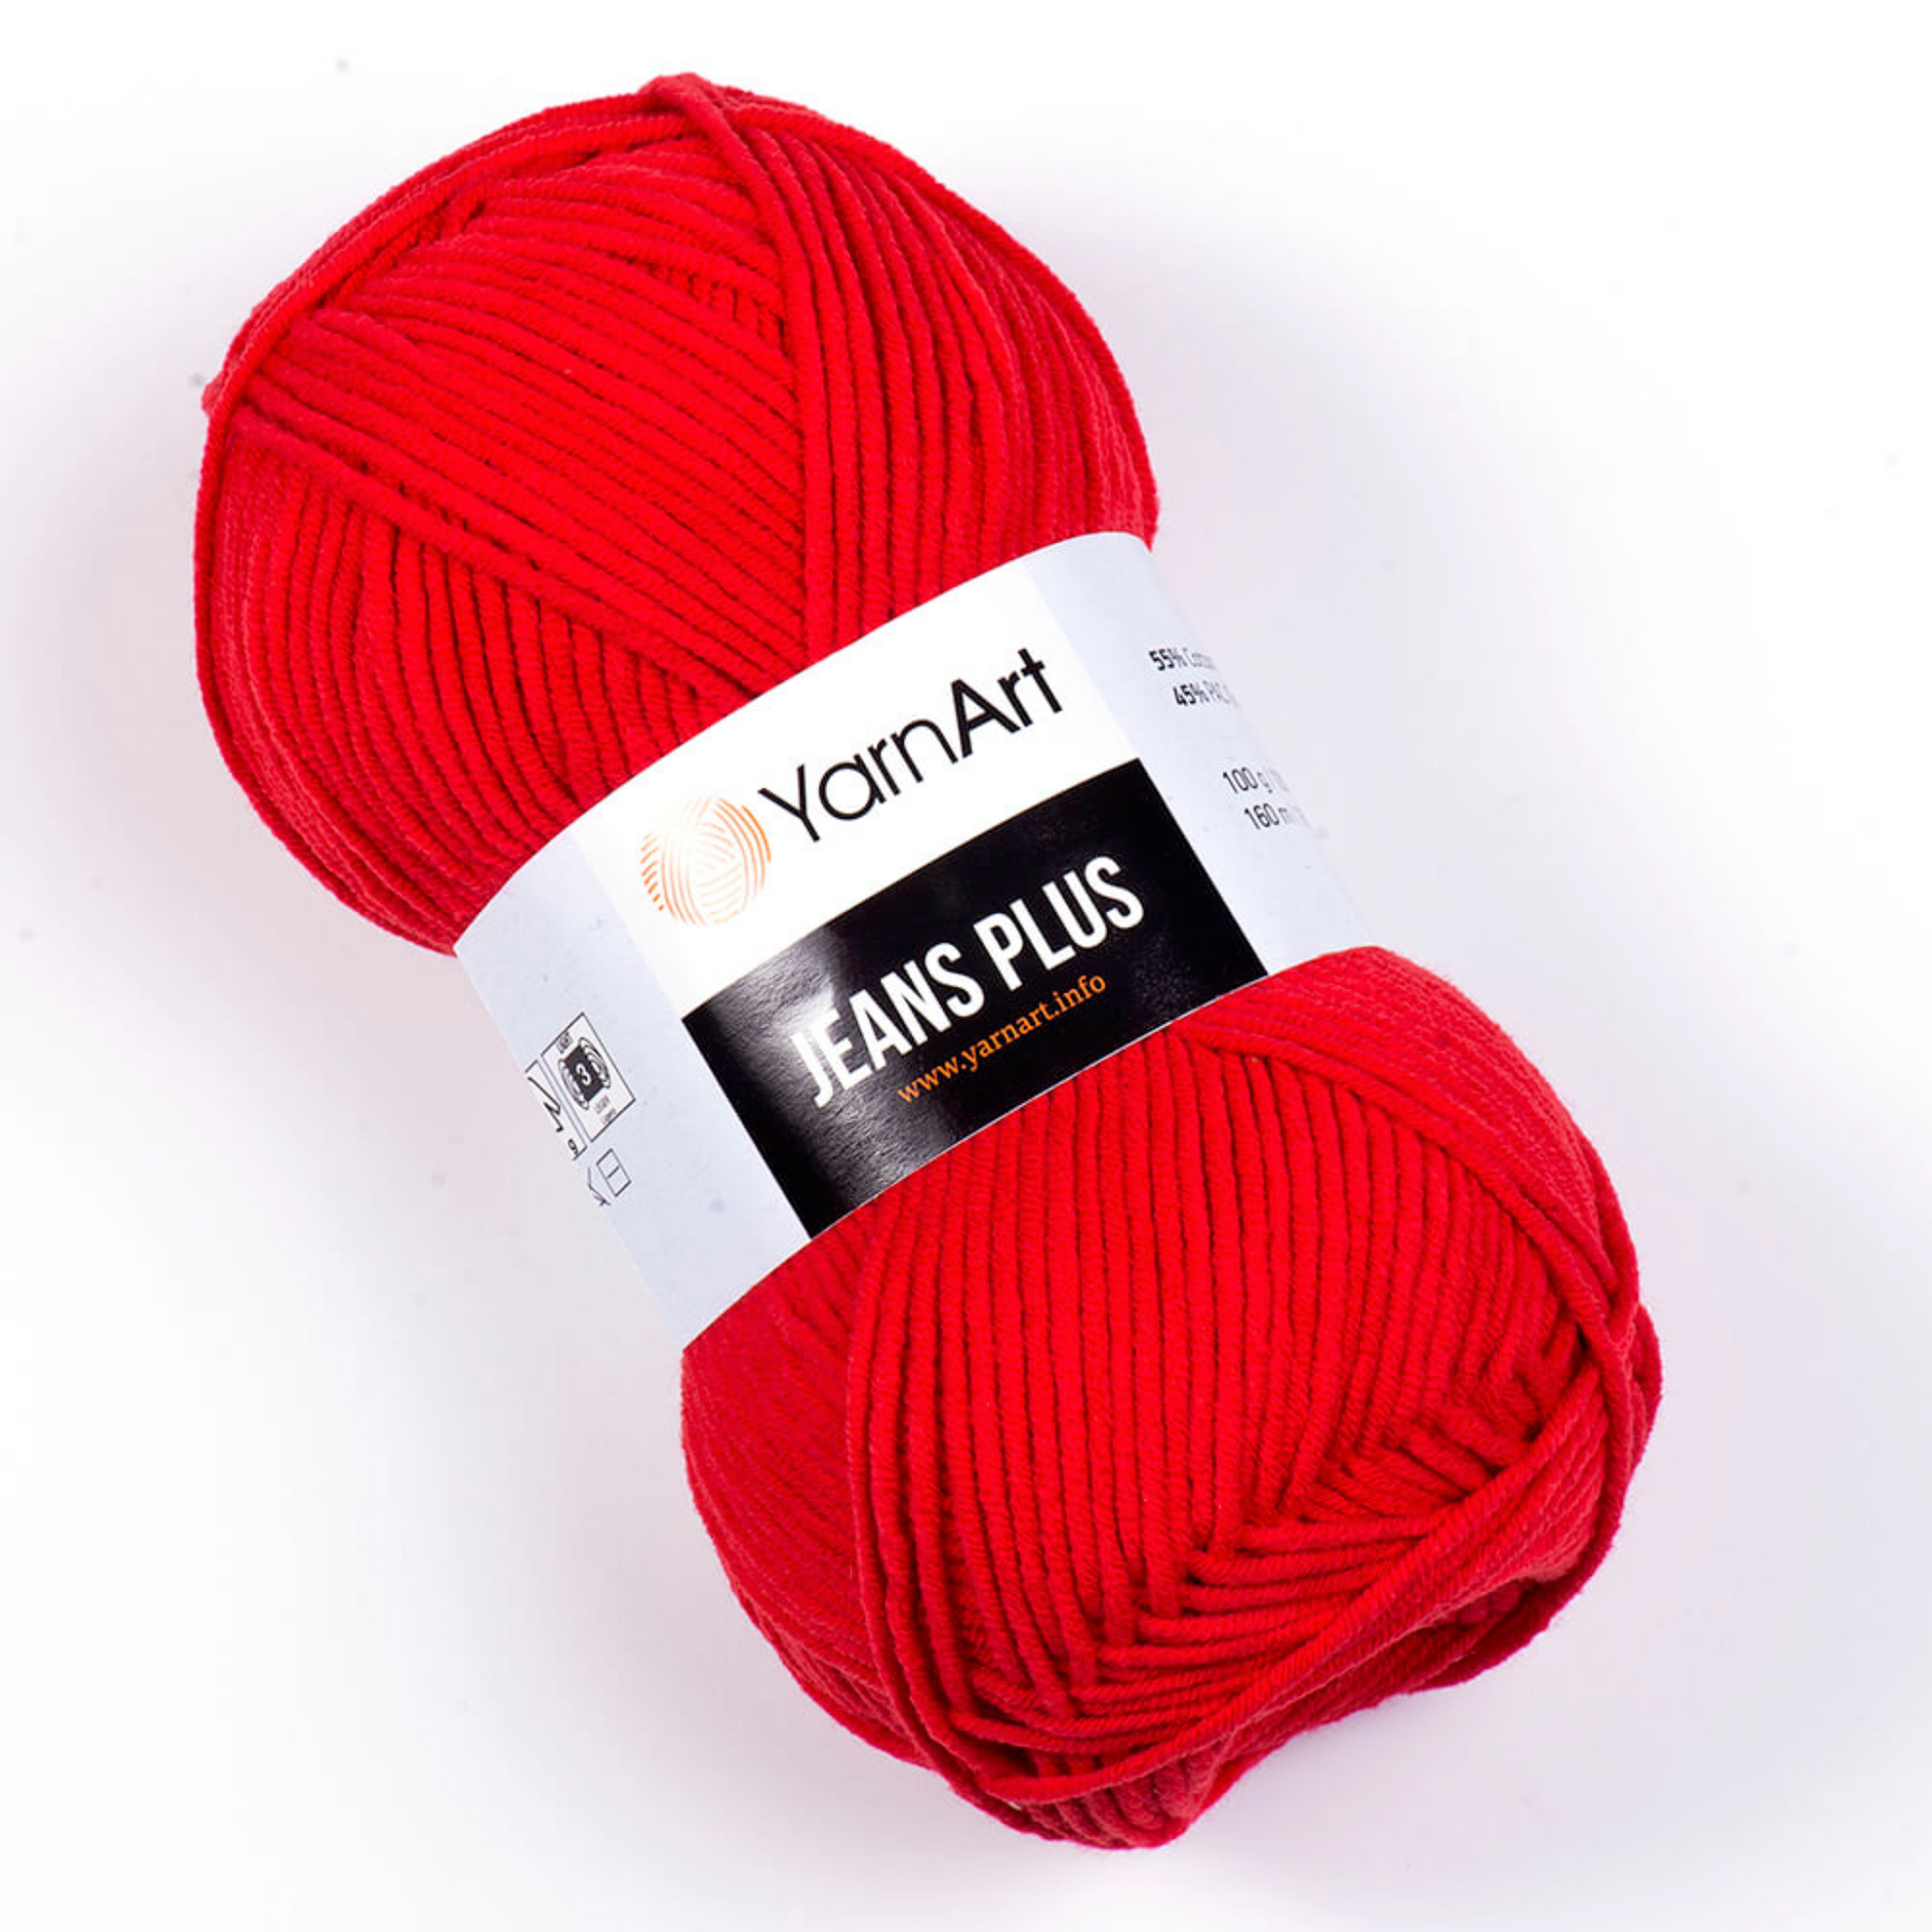 YarnArt Jean Plus Yarn, Bright Red - 90